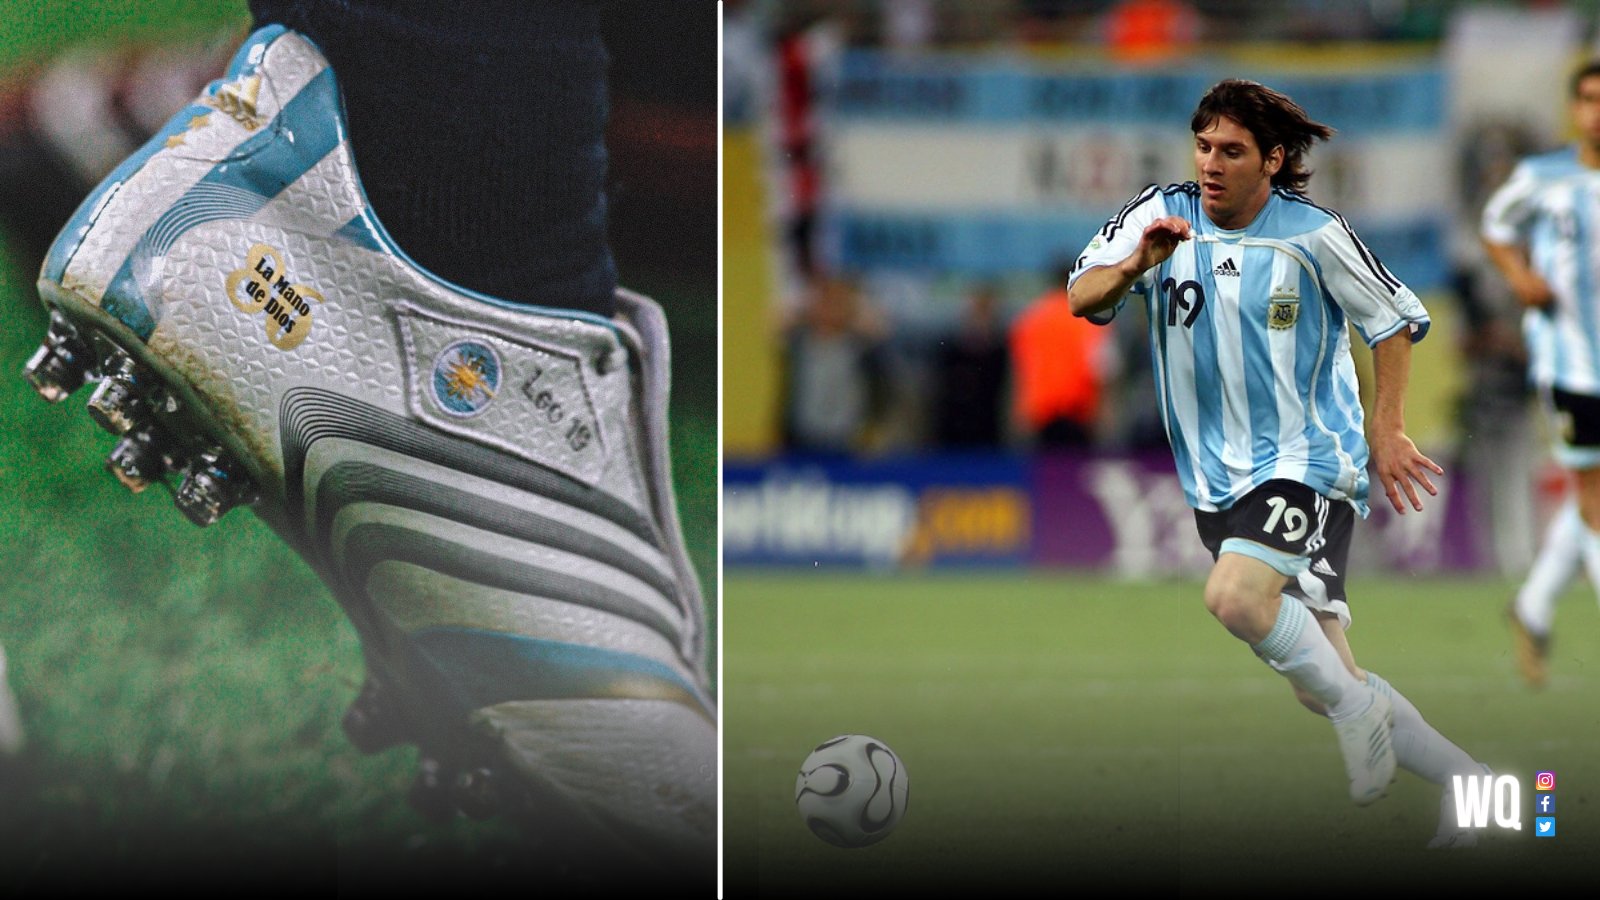 término análogo maceta gato Walter Queijeiro on Twitter: "En el Mundial 2006, Lionel Messi firmó su  primer contrato con Adidas y jugó todo la competencia con unos botines en  honor a Maradona. 🔟 "La mano de